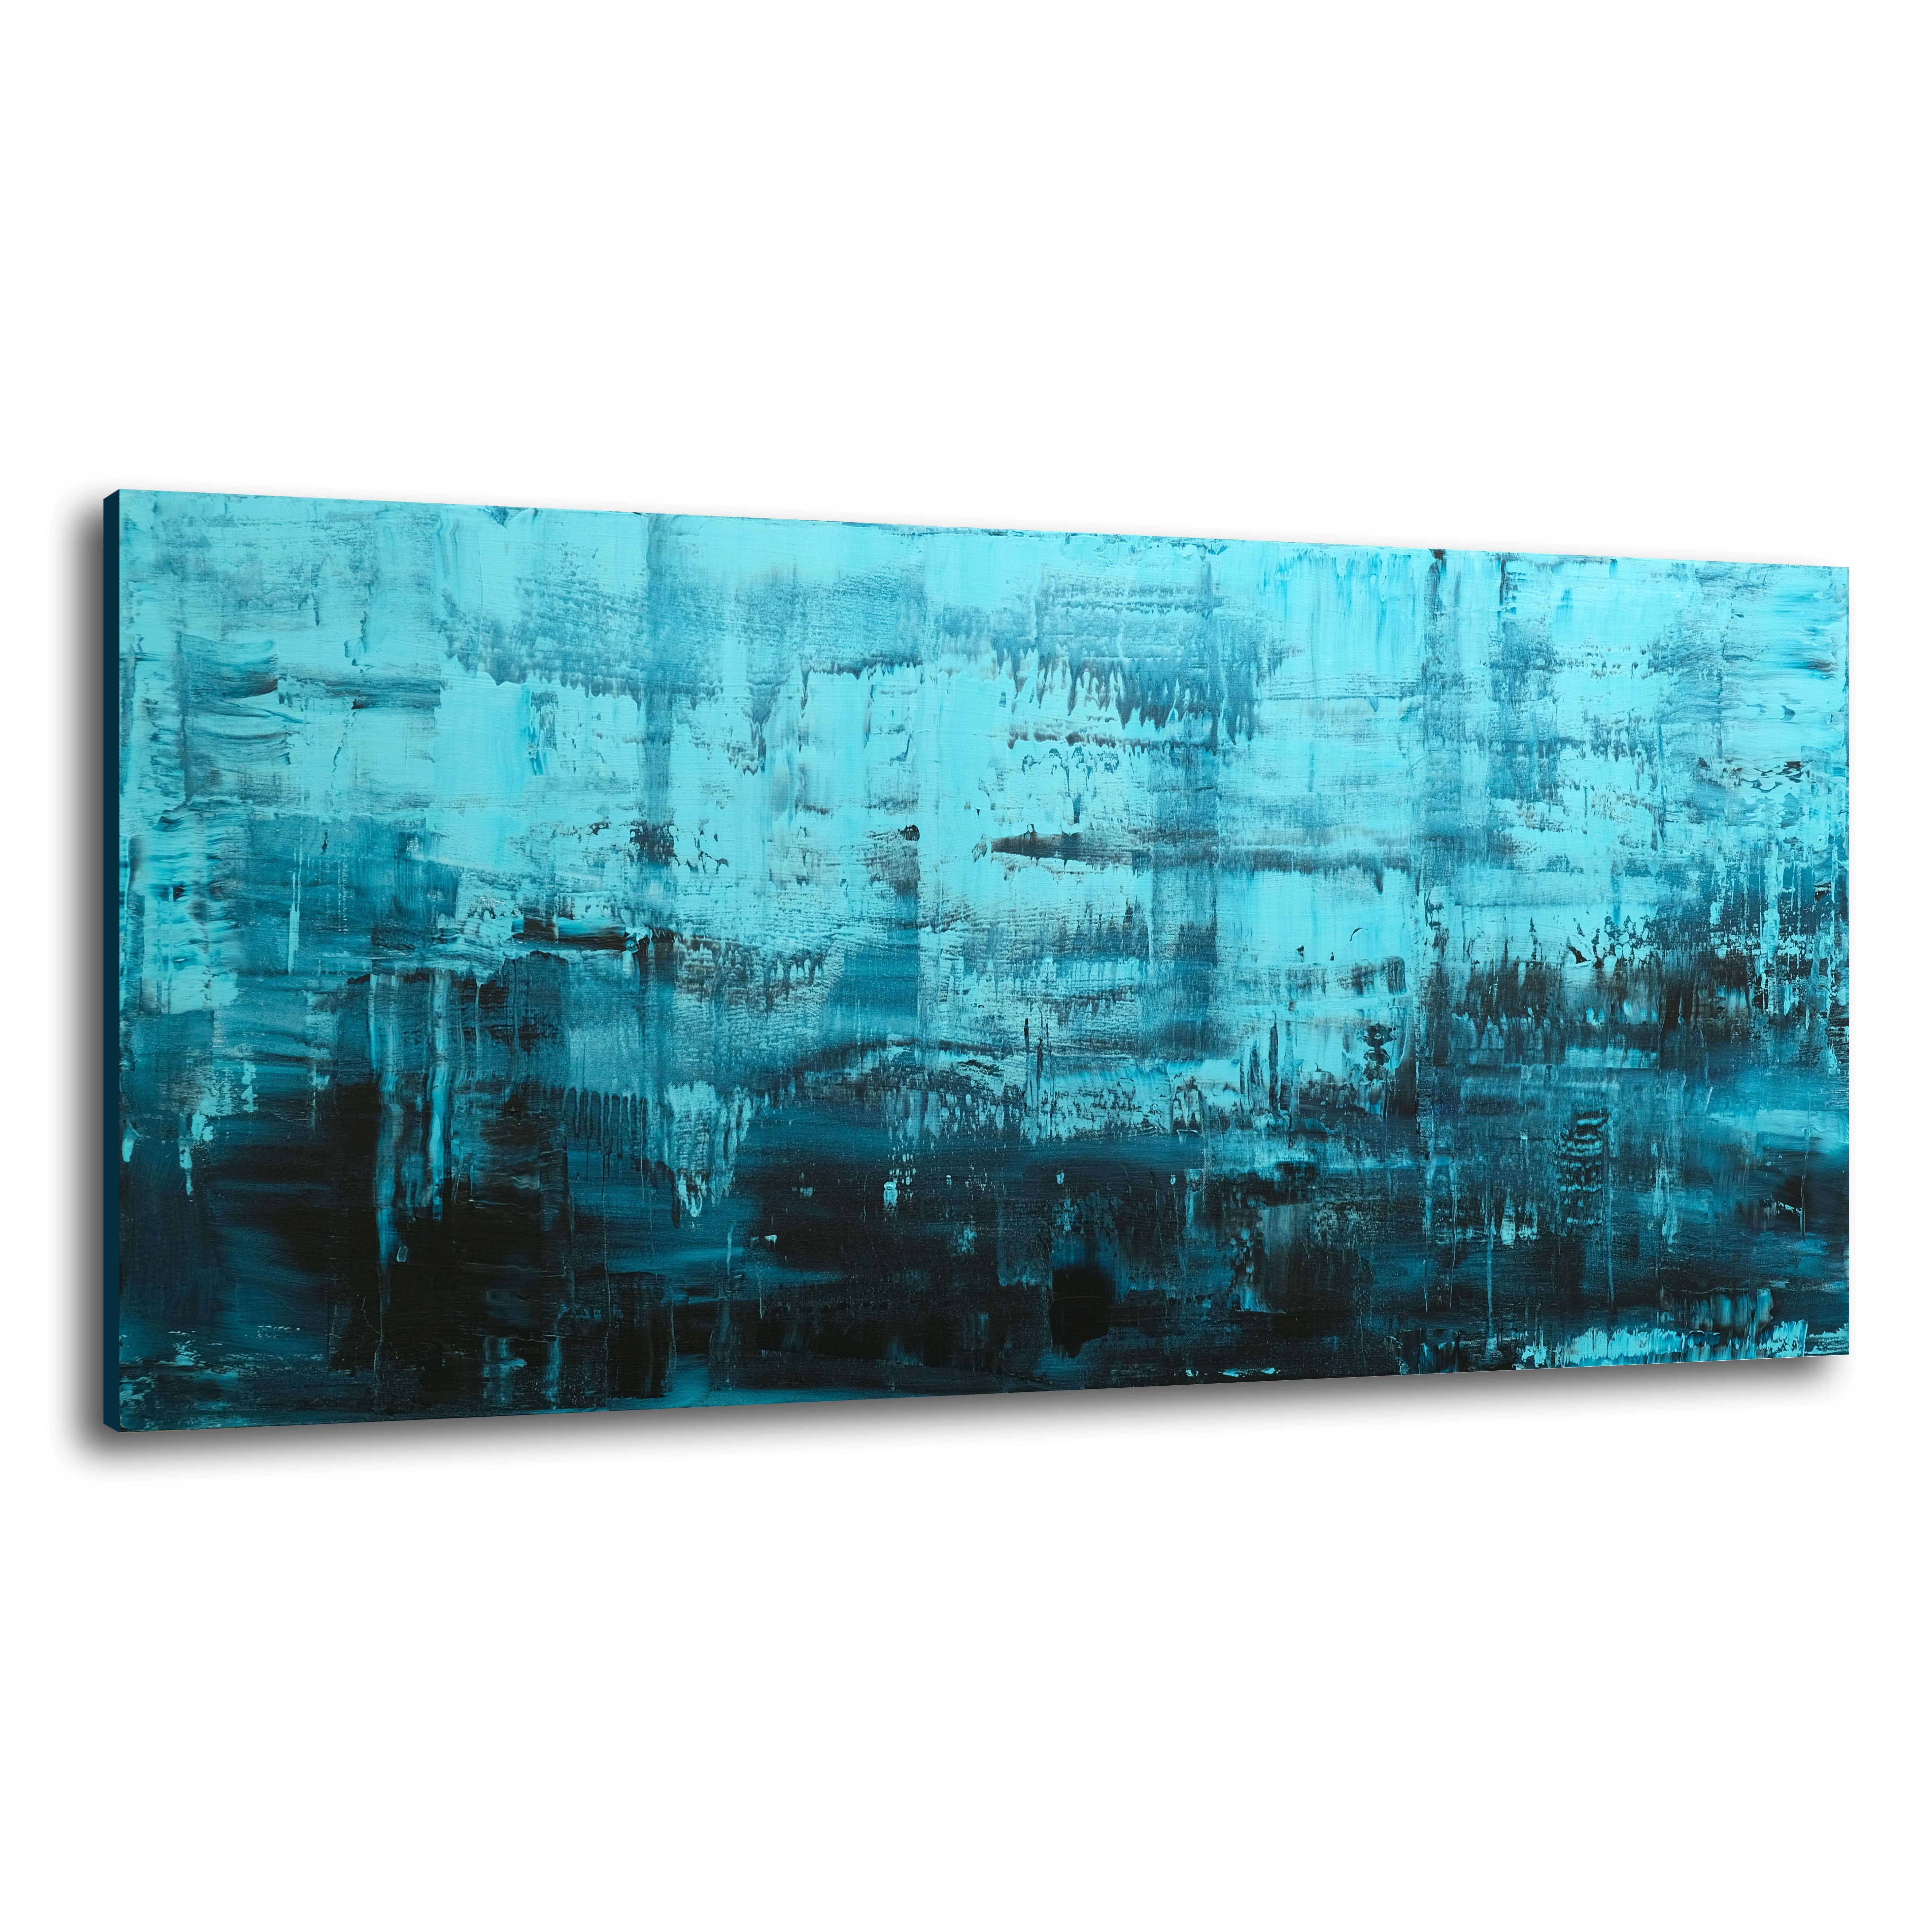 Ocean Blues, Painting, Acrylic on Canvas 2